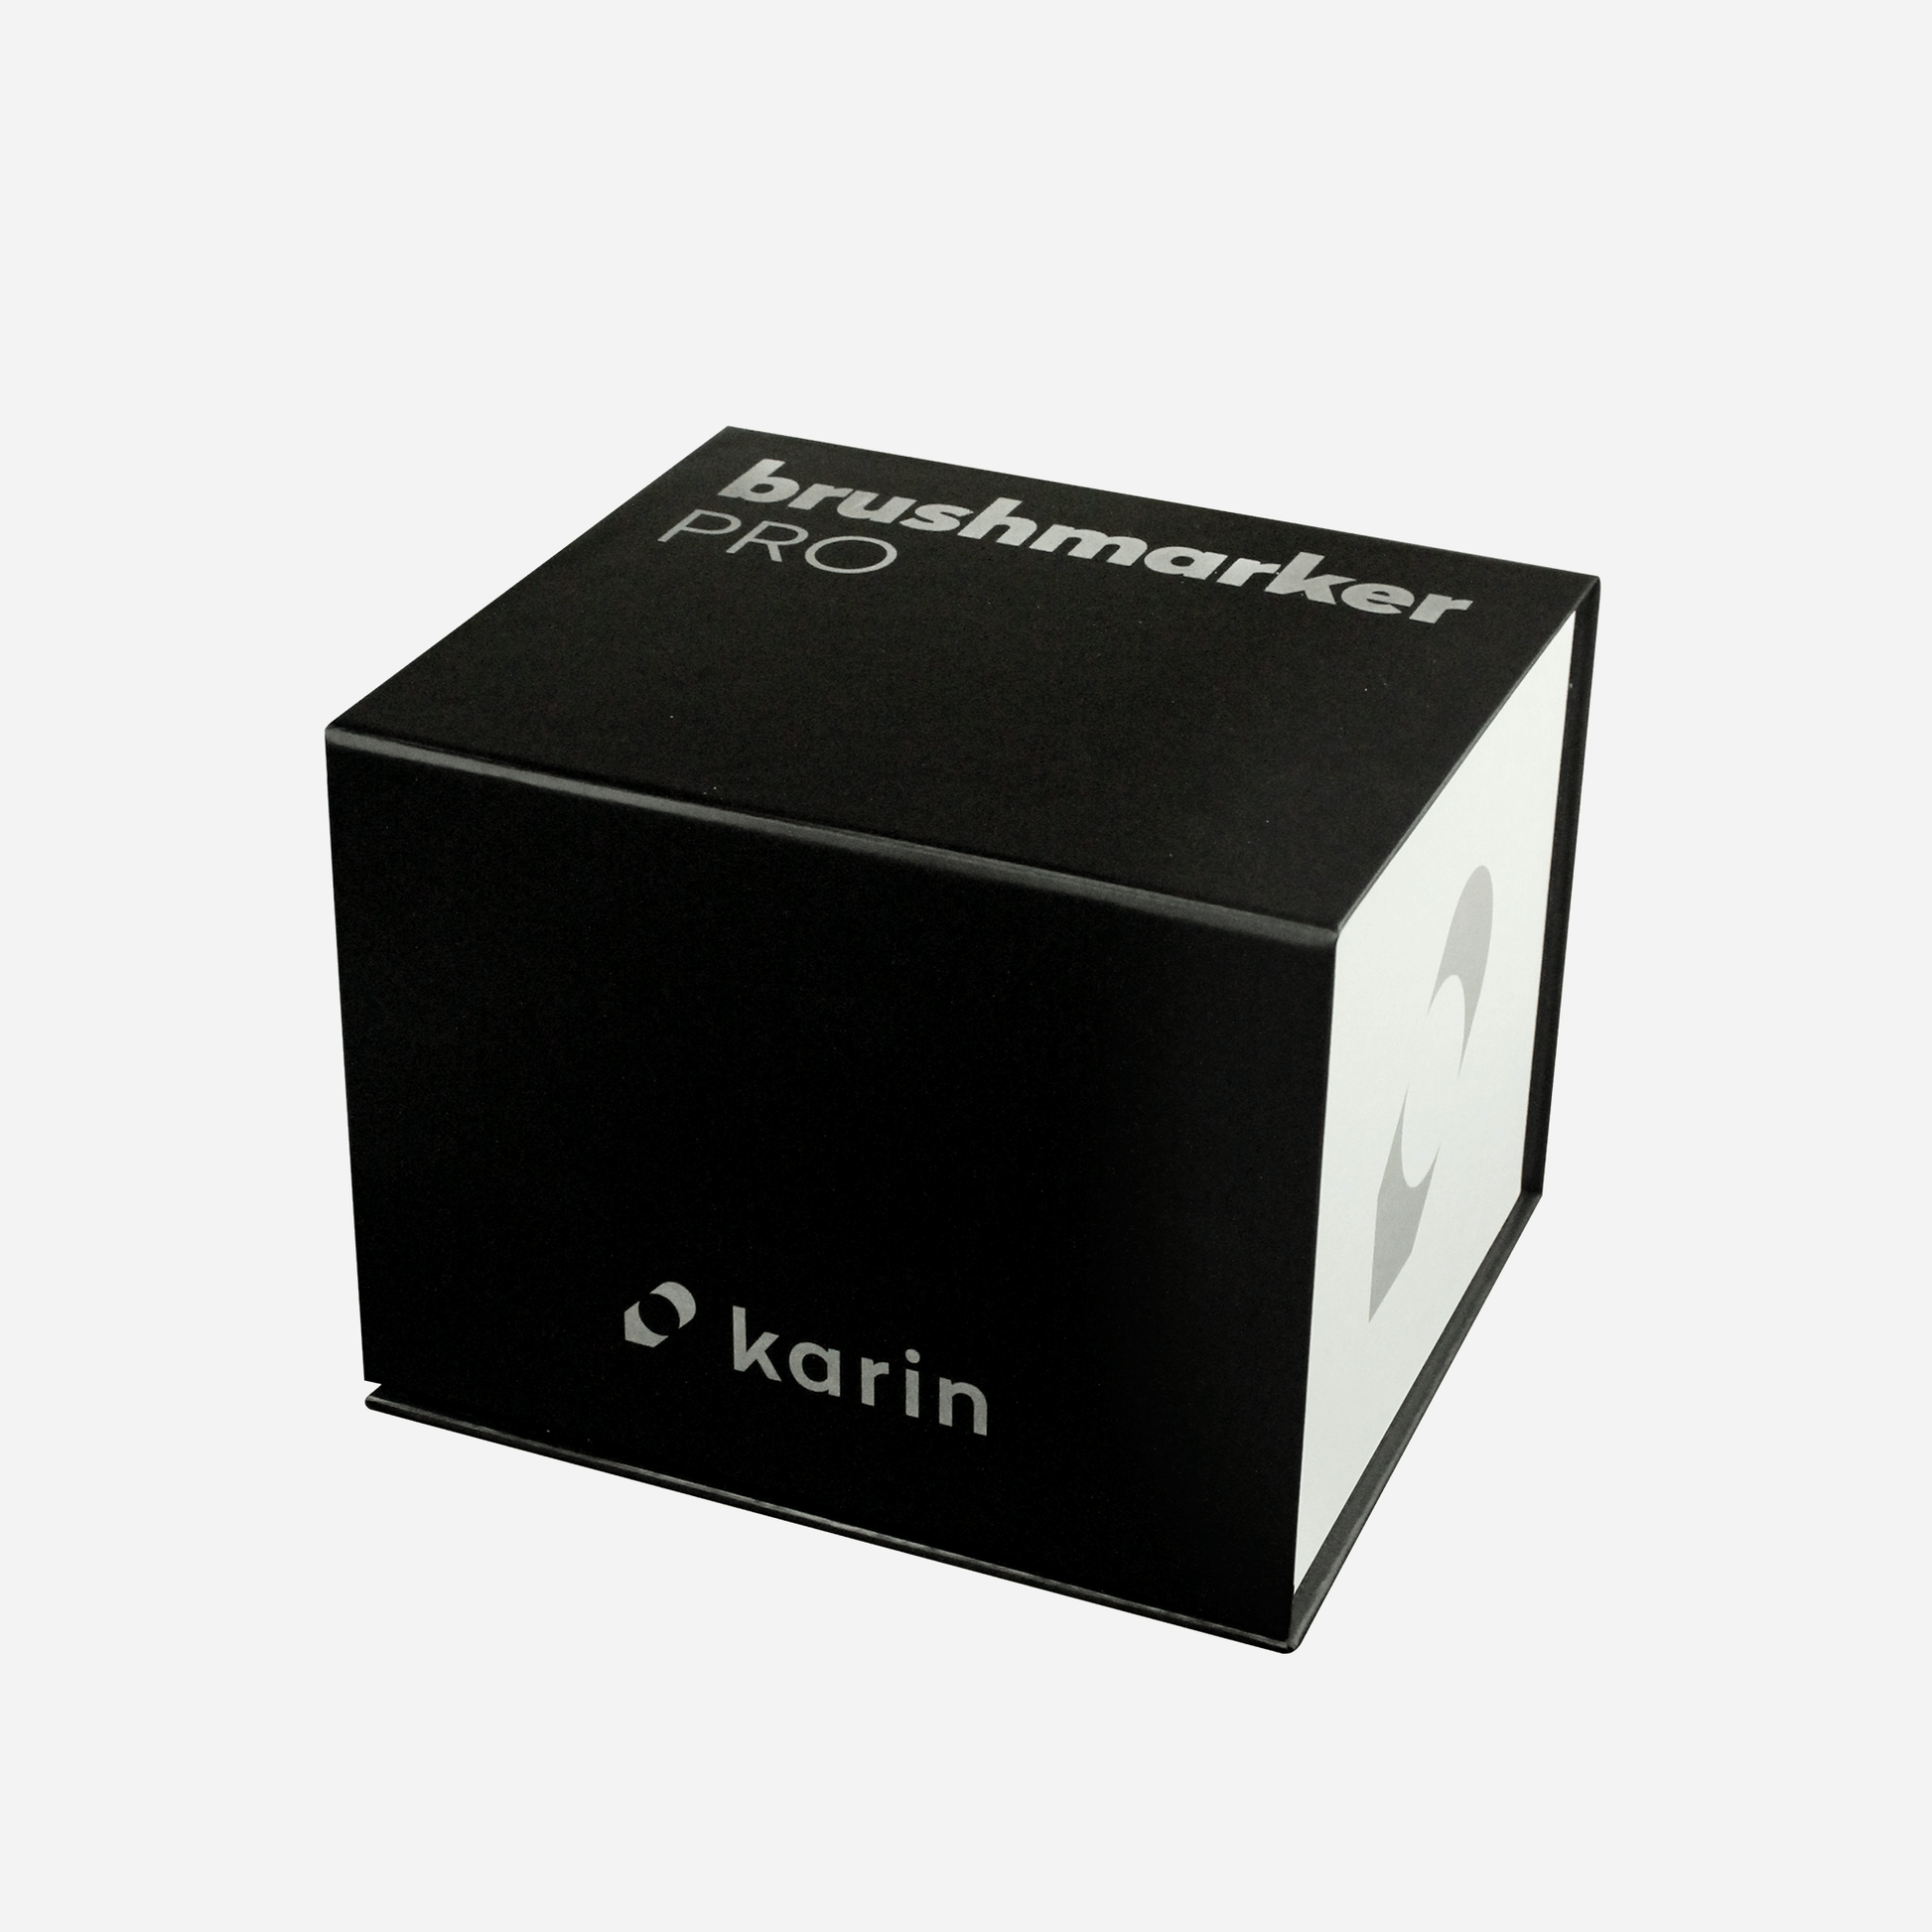 KARIN Brushmarker PRO Sets of 12, Mini Box of 26, Mega Box of 60, Mega Box  of 72